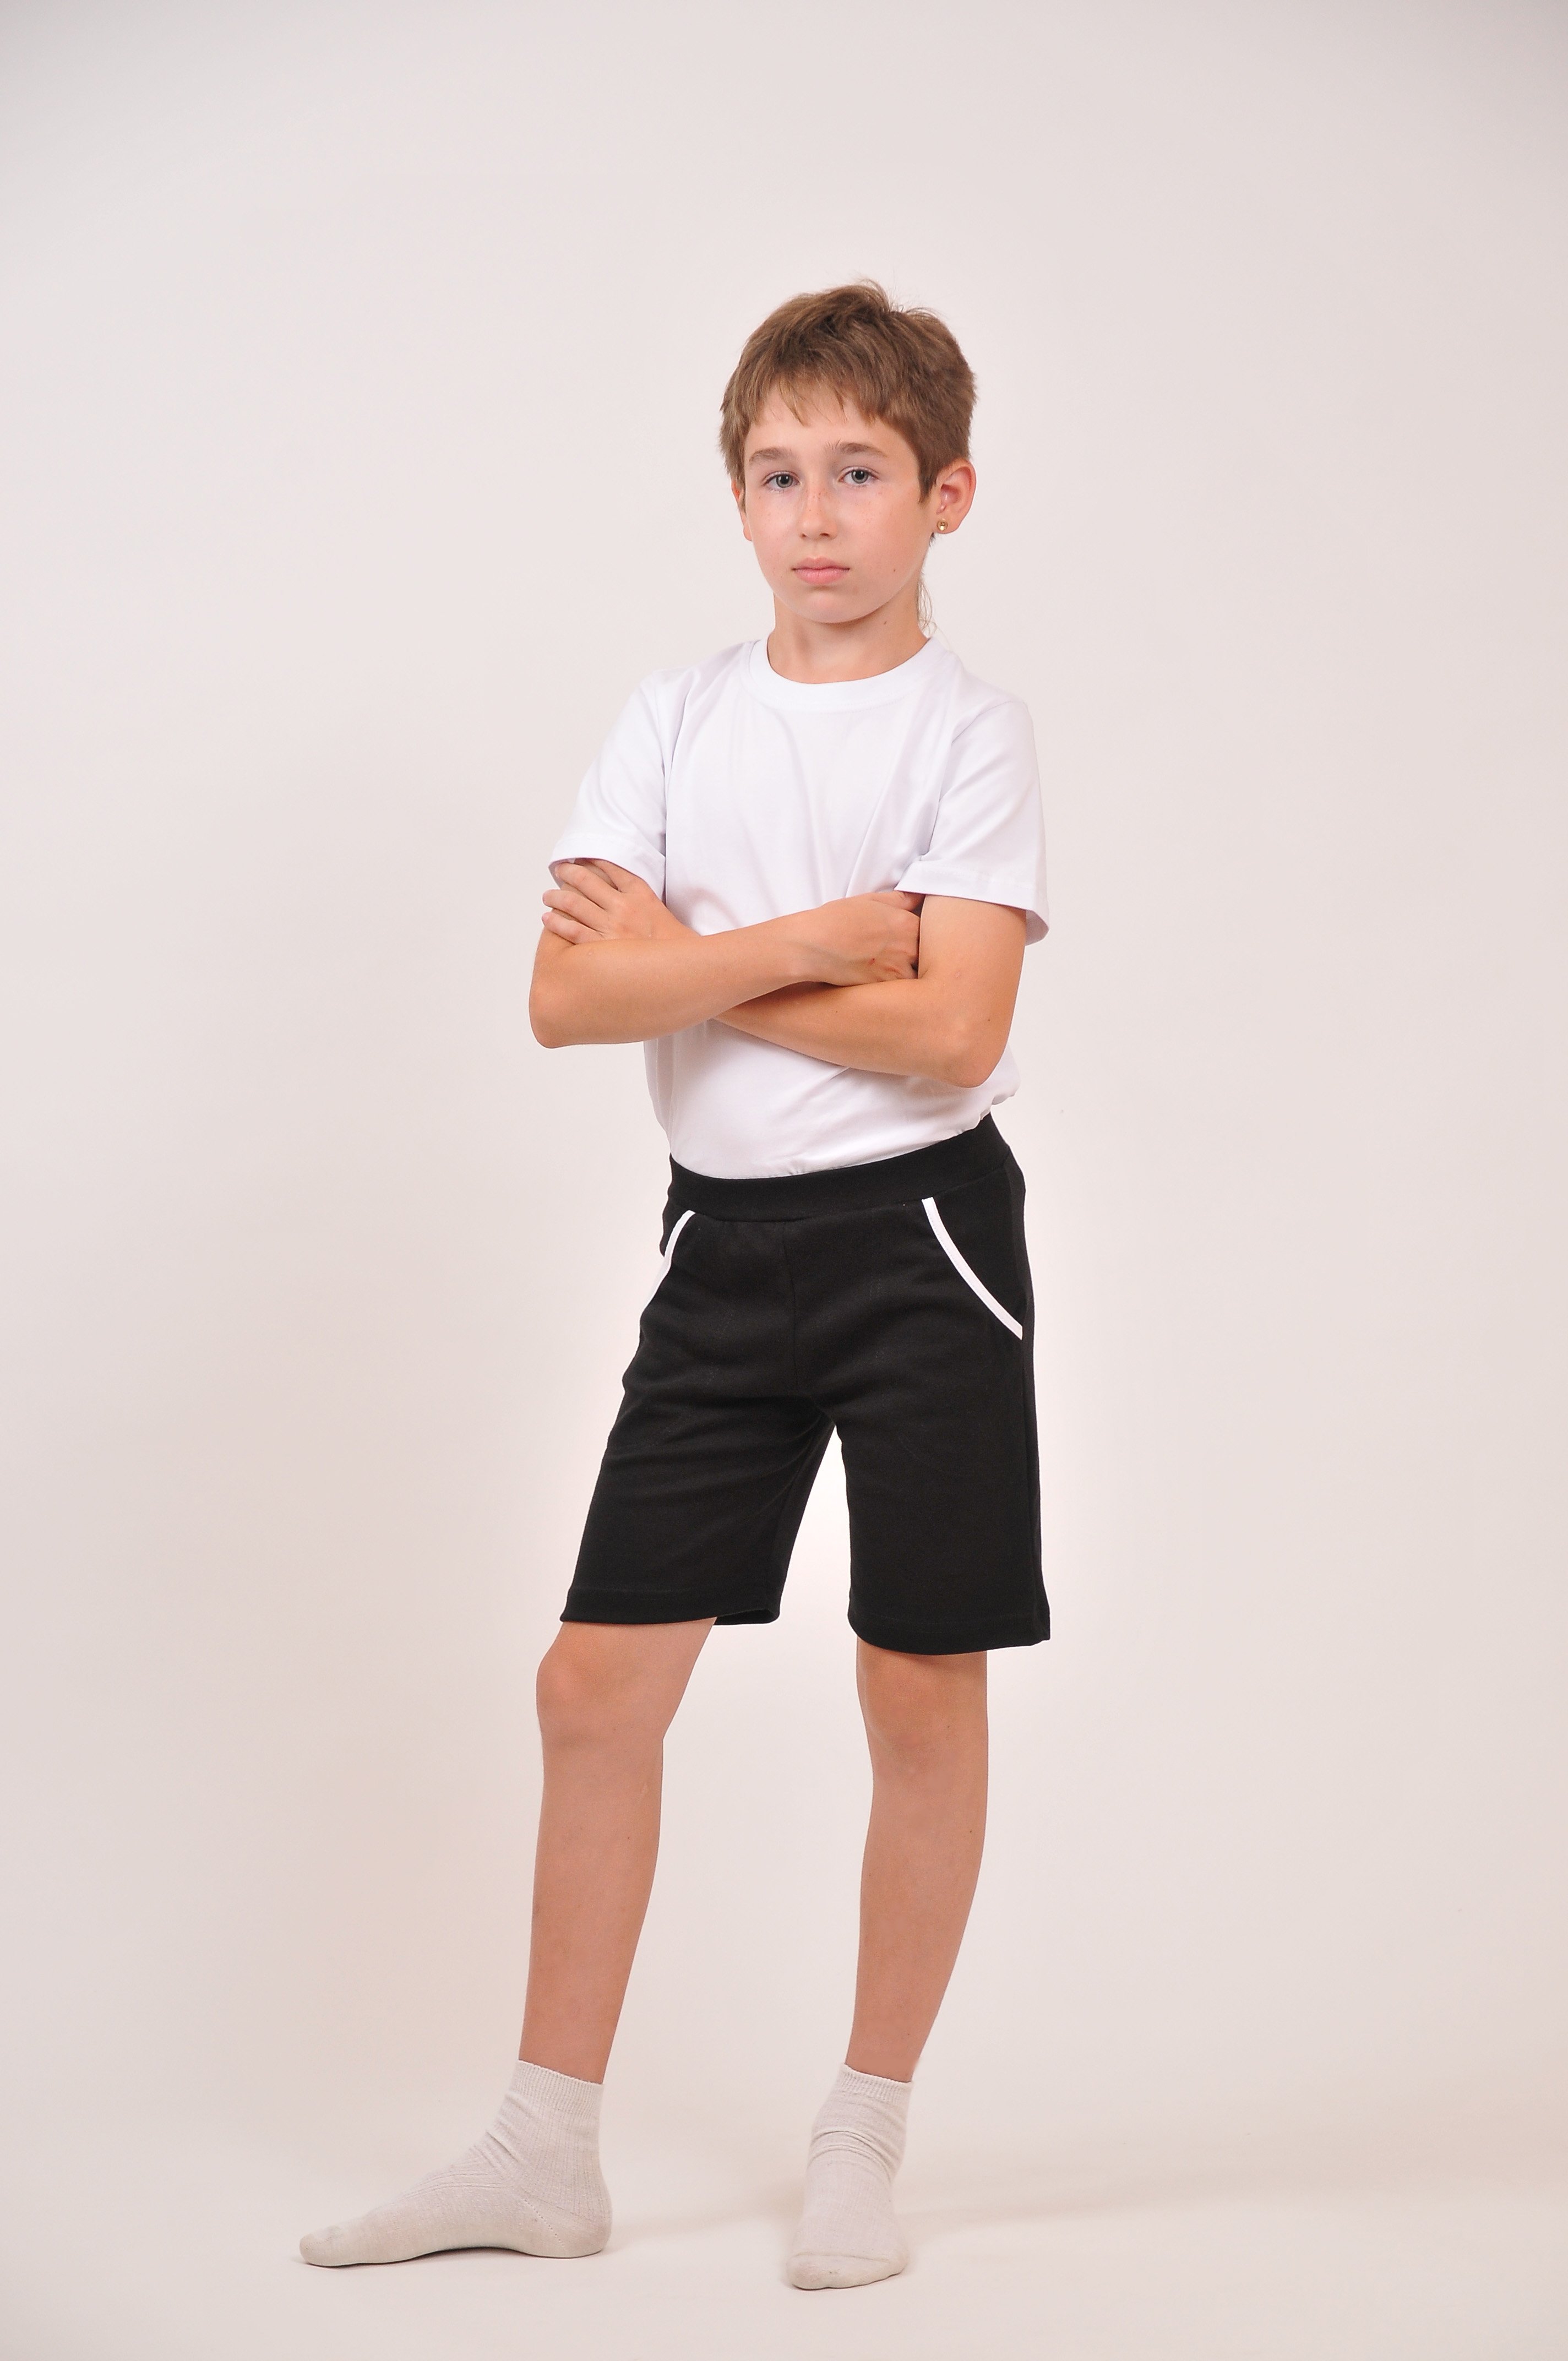 В школу можно в шортах. Шорты для мальчика. Шорты детские спортивные. Спортивные шорты для мальчика. Шорты черные для мальчика.